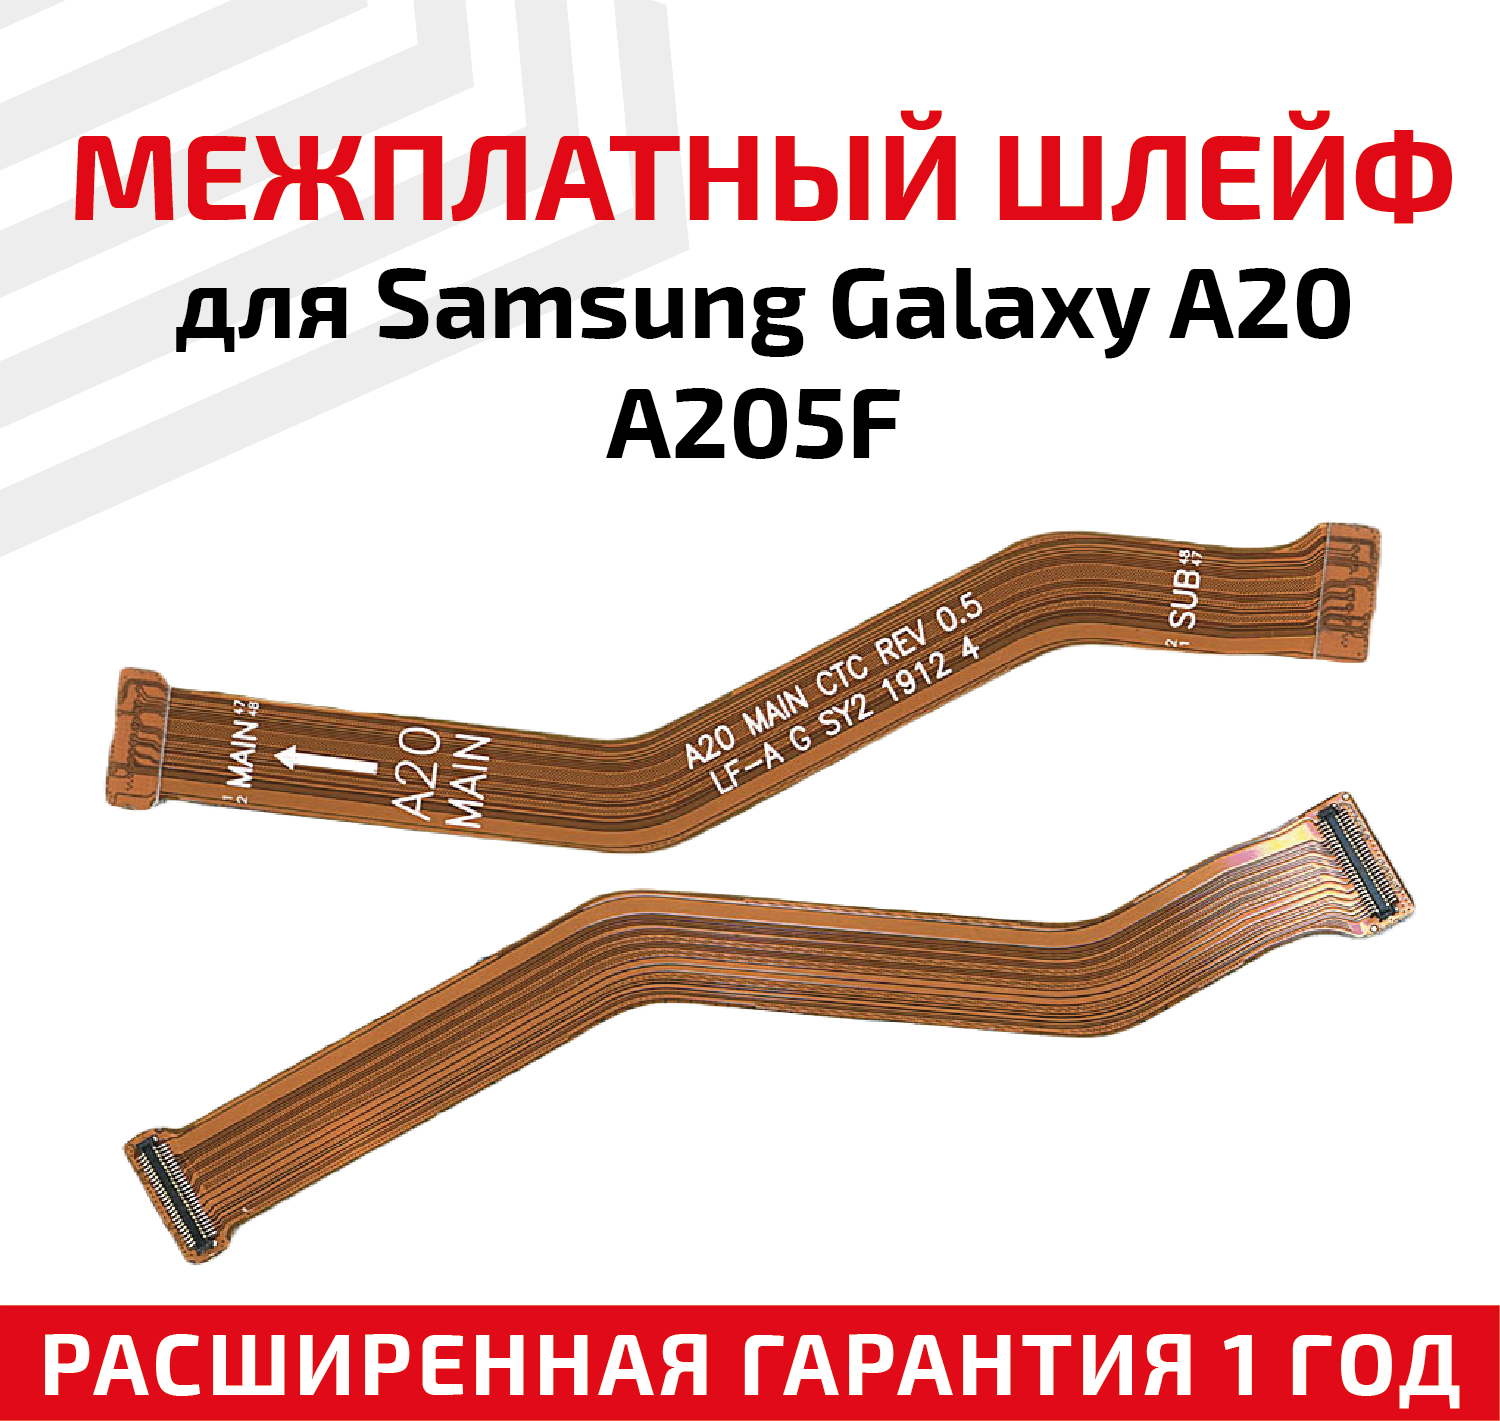 Шлейф для Samsung A205F Galaxy A20 межплатный основной